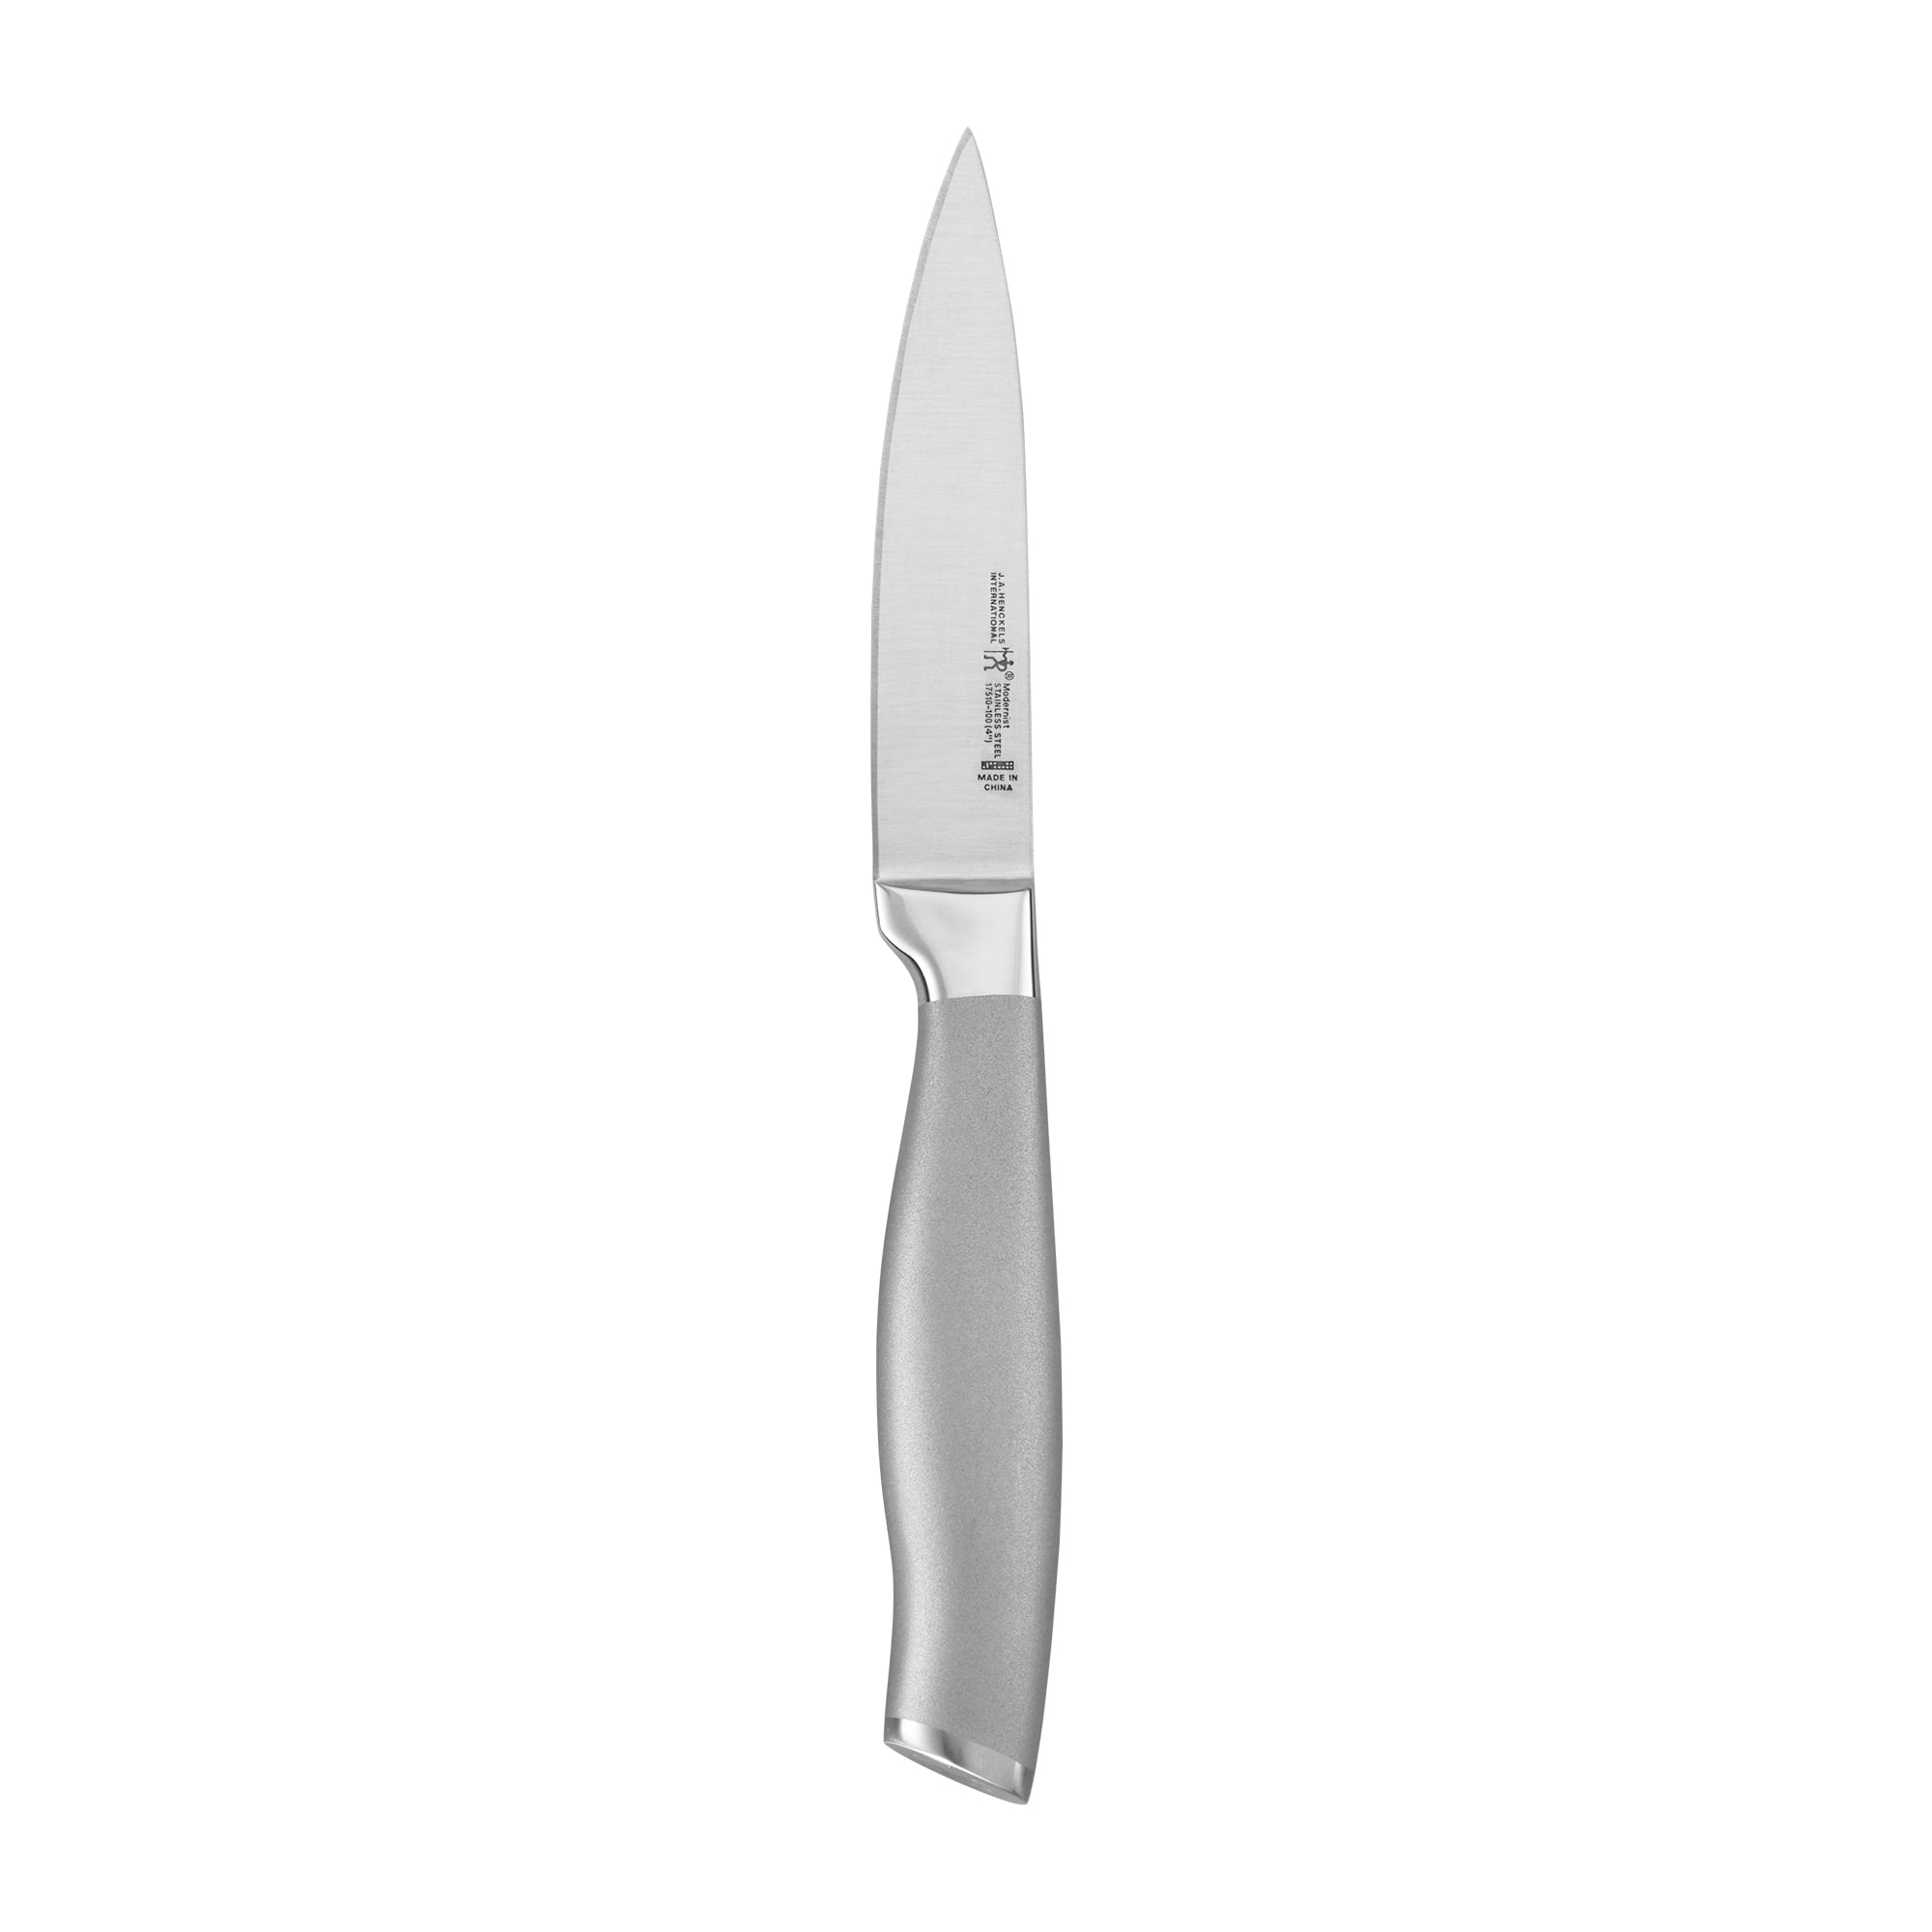 Henckels Definition Paring Knife - Silver/Black, 1 - Kroger